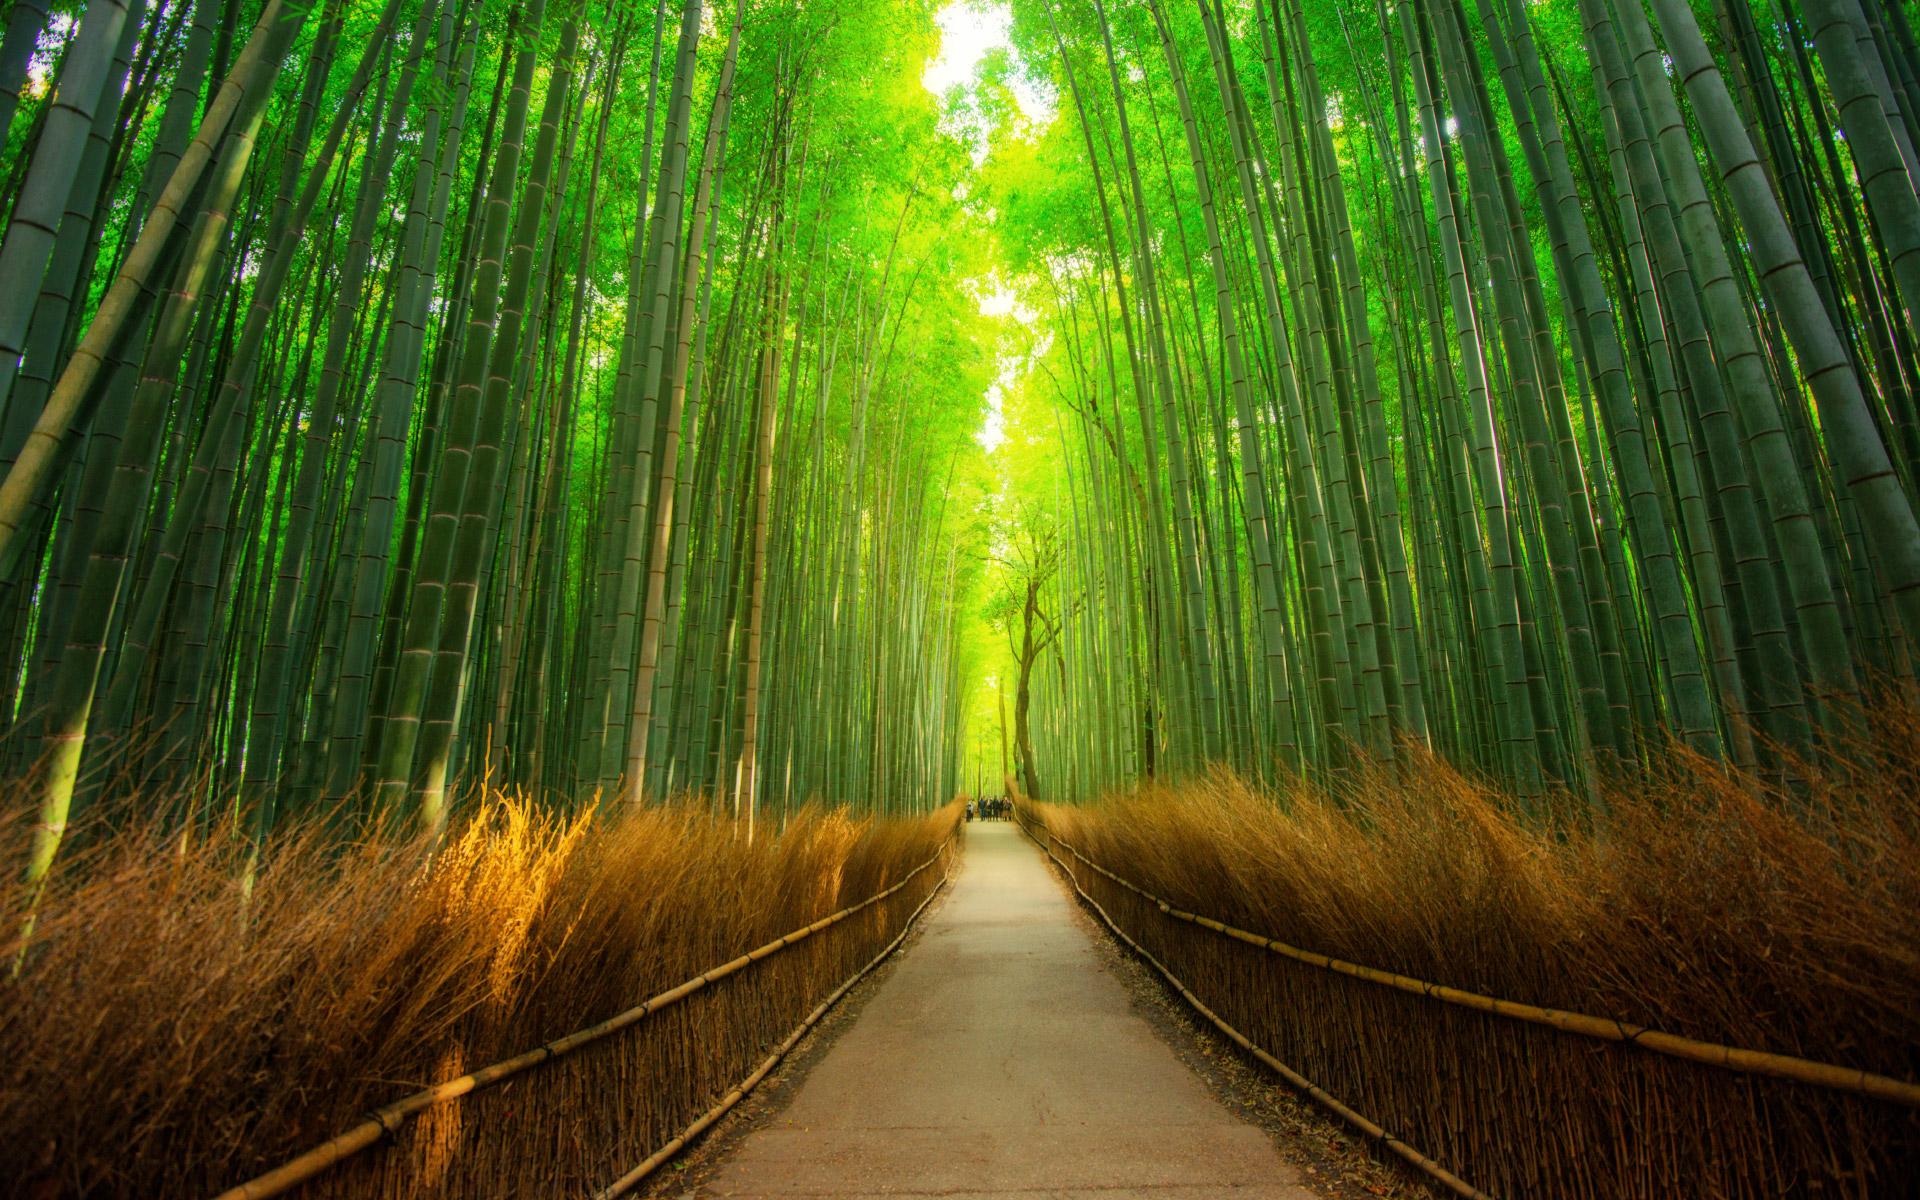 The Arashiyama Bamboo Grove of Kyoto in Japan